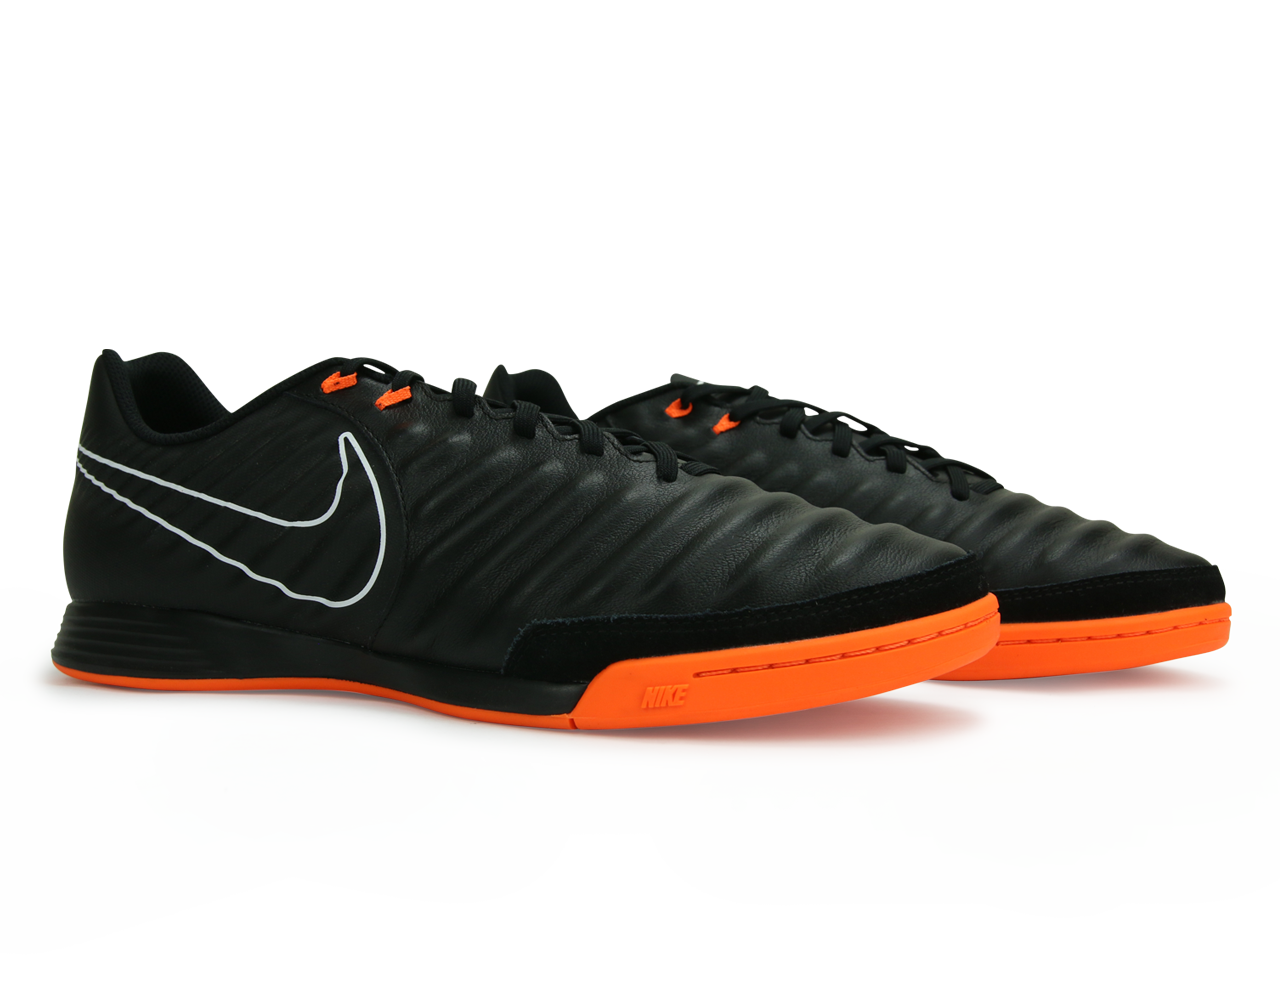 Nike Men's Tiempo LegendX 7 Academy Indoor Soccer Shoes Black/Total Orange